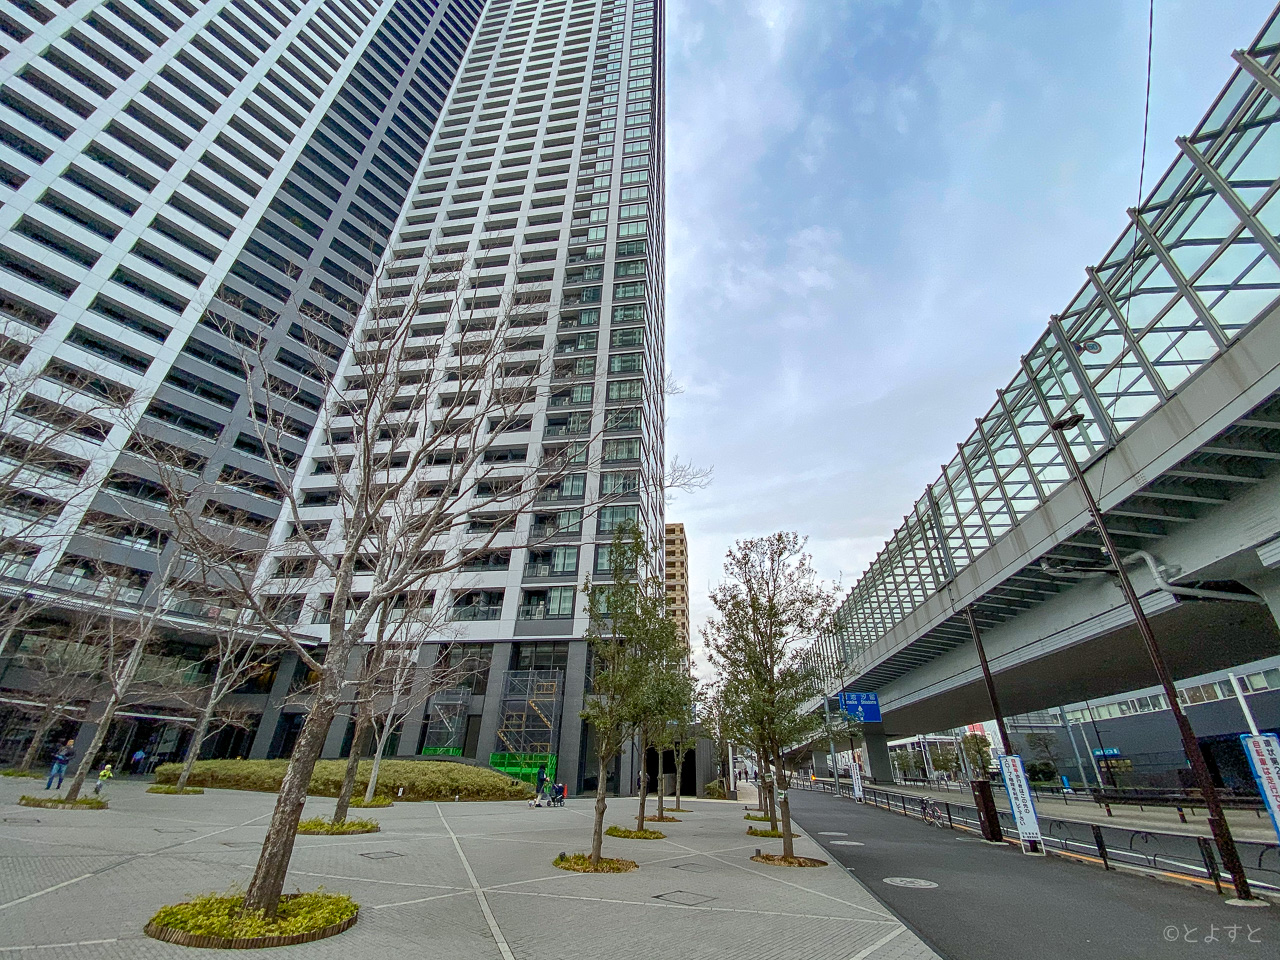 東京BRT「勝どき」の停留所、いよいよ勝どき ザ・タワー前で着工へ